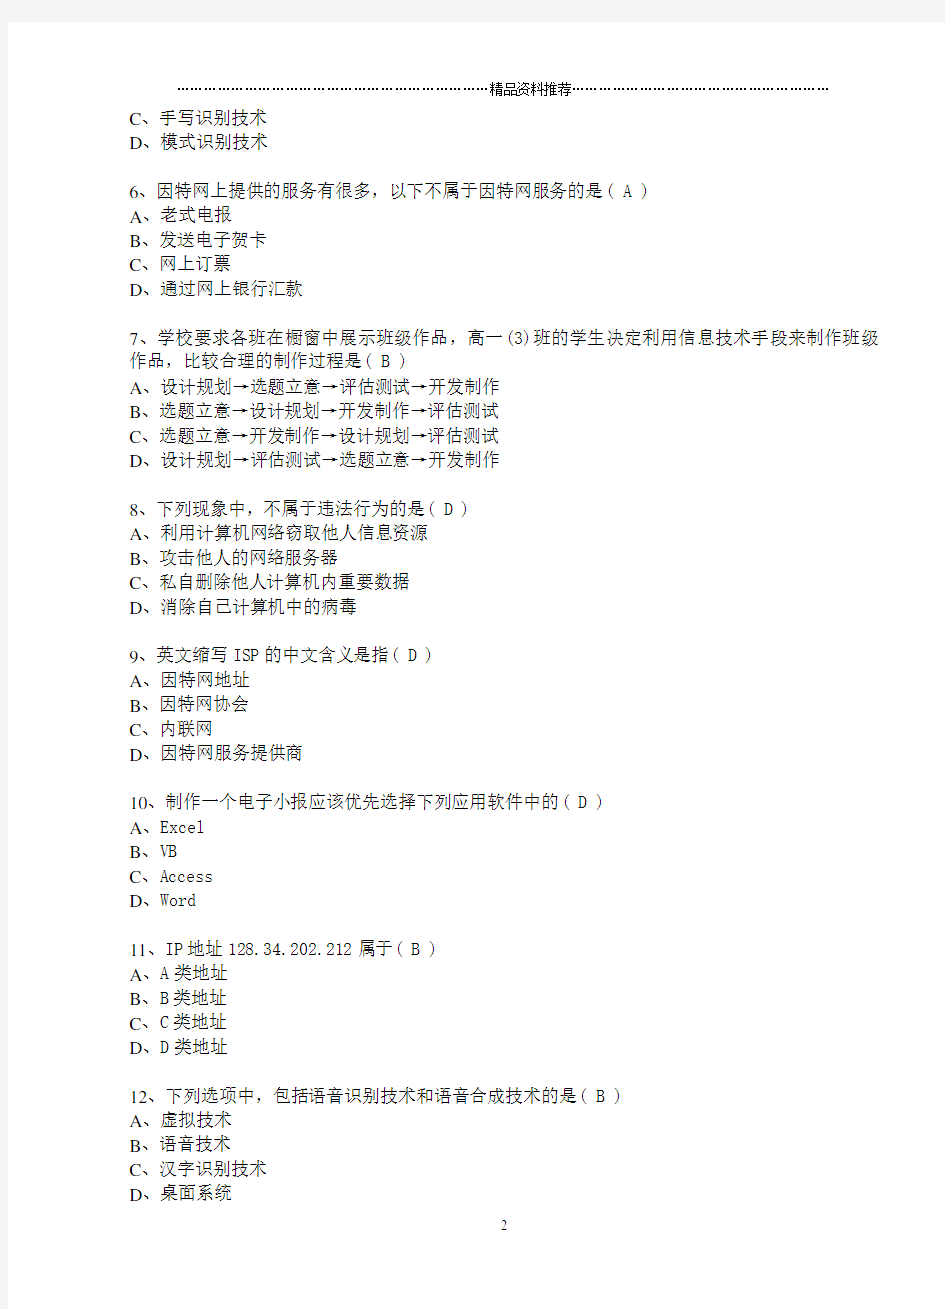 江苏省高中信息技术(31套)26-31套选择题答案和操作题